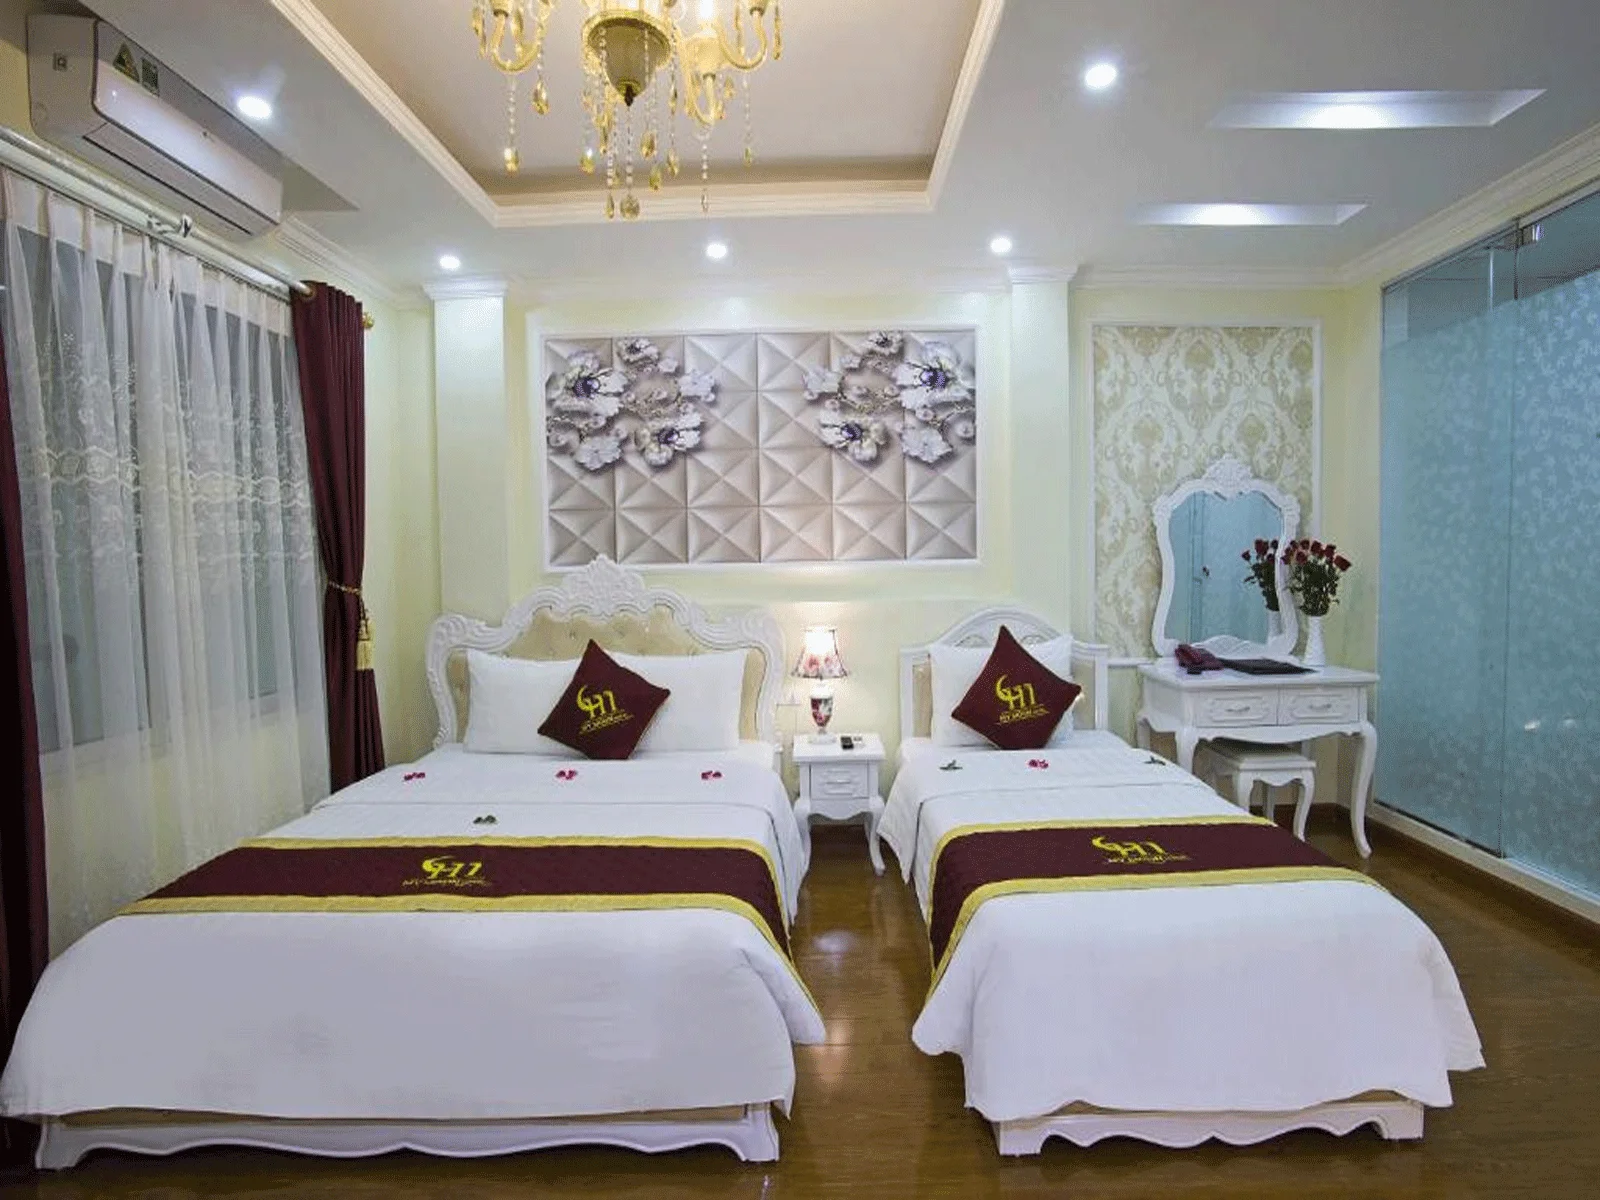 Khách sạn My Moon Hotel Hà Nội